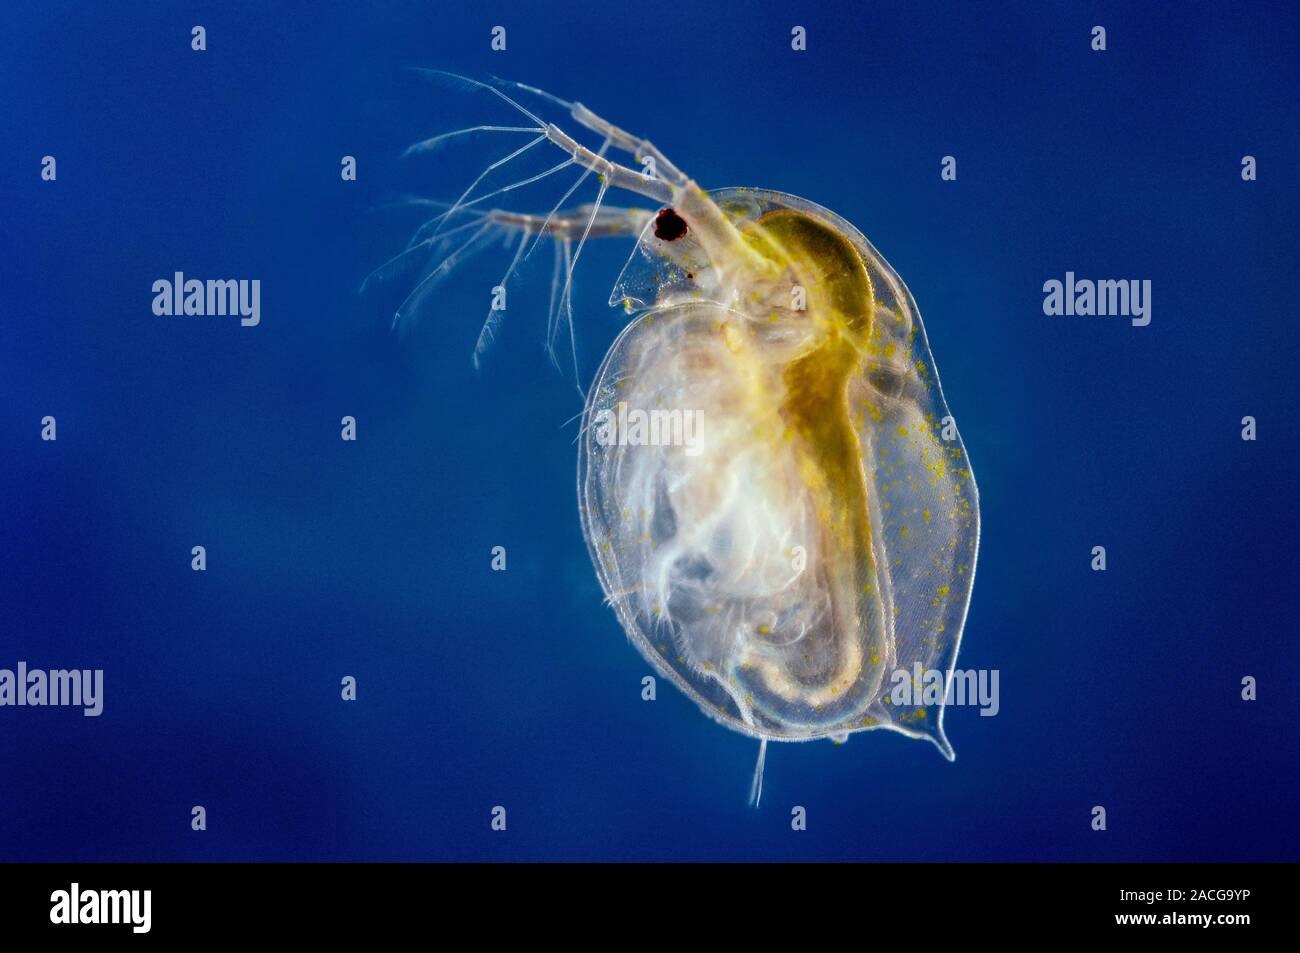 Зоопланктон пресных водоемов